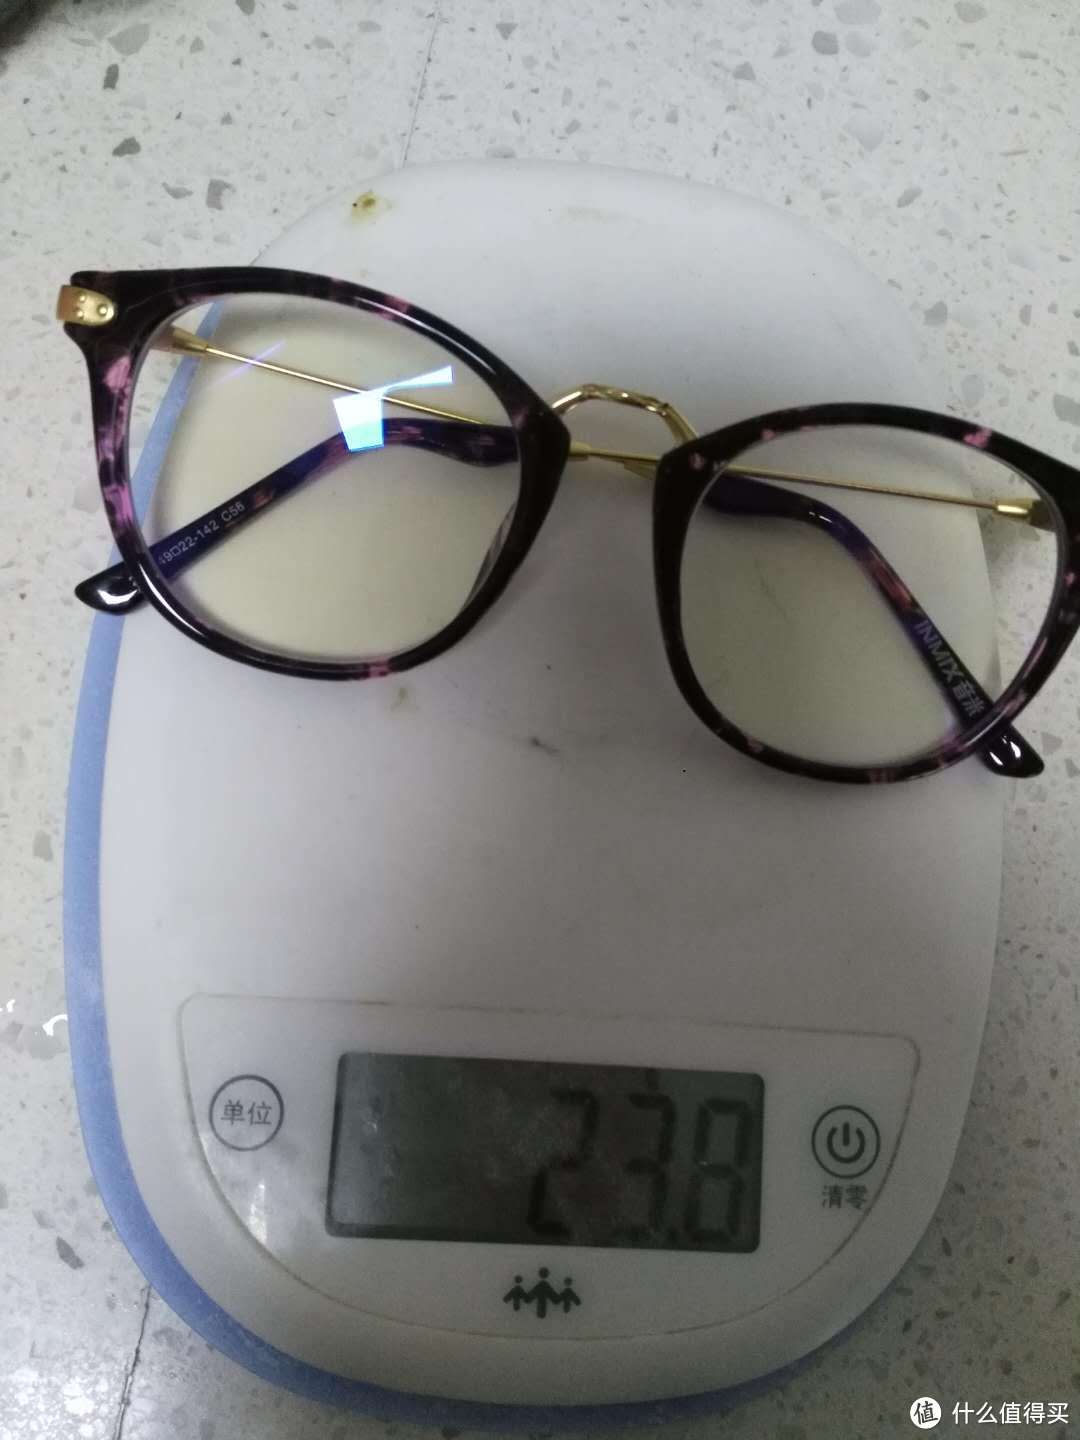 不失为一款时尚的眼镜——INMIX音米防蓝光眼镜轻测